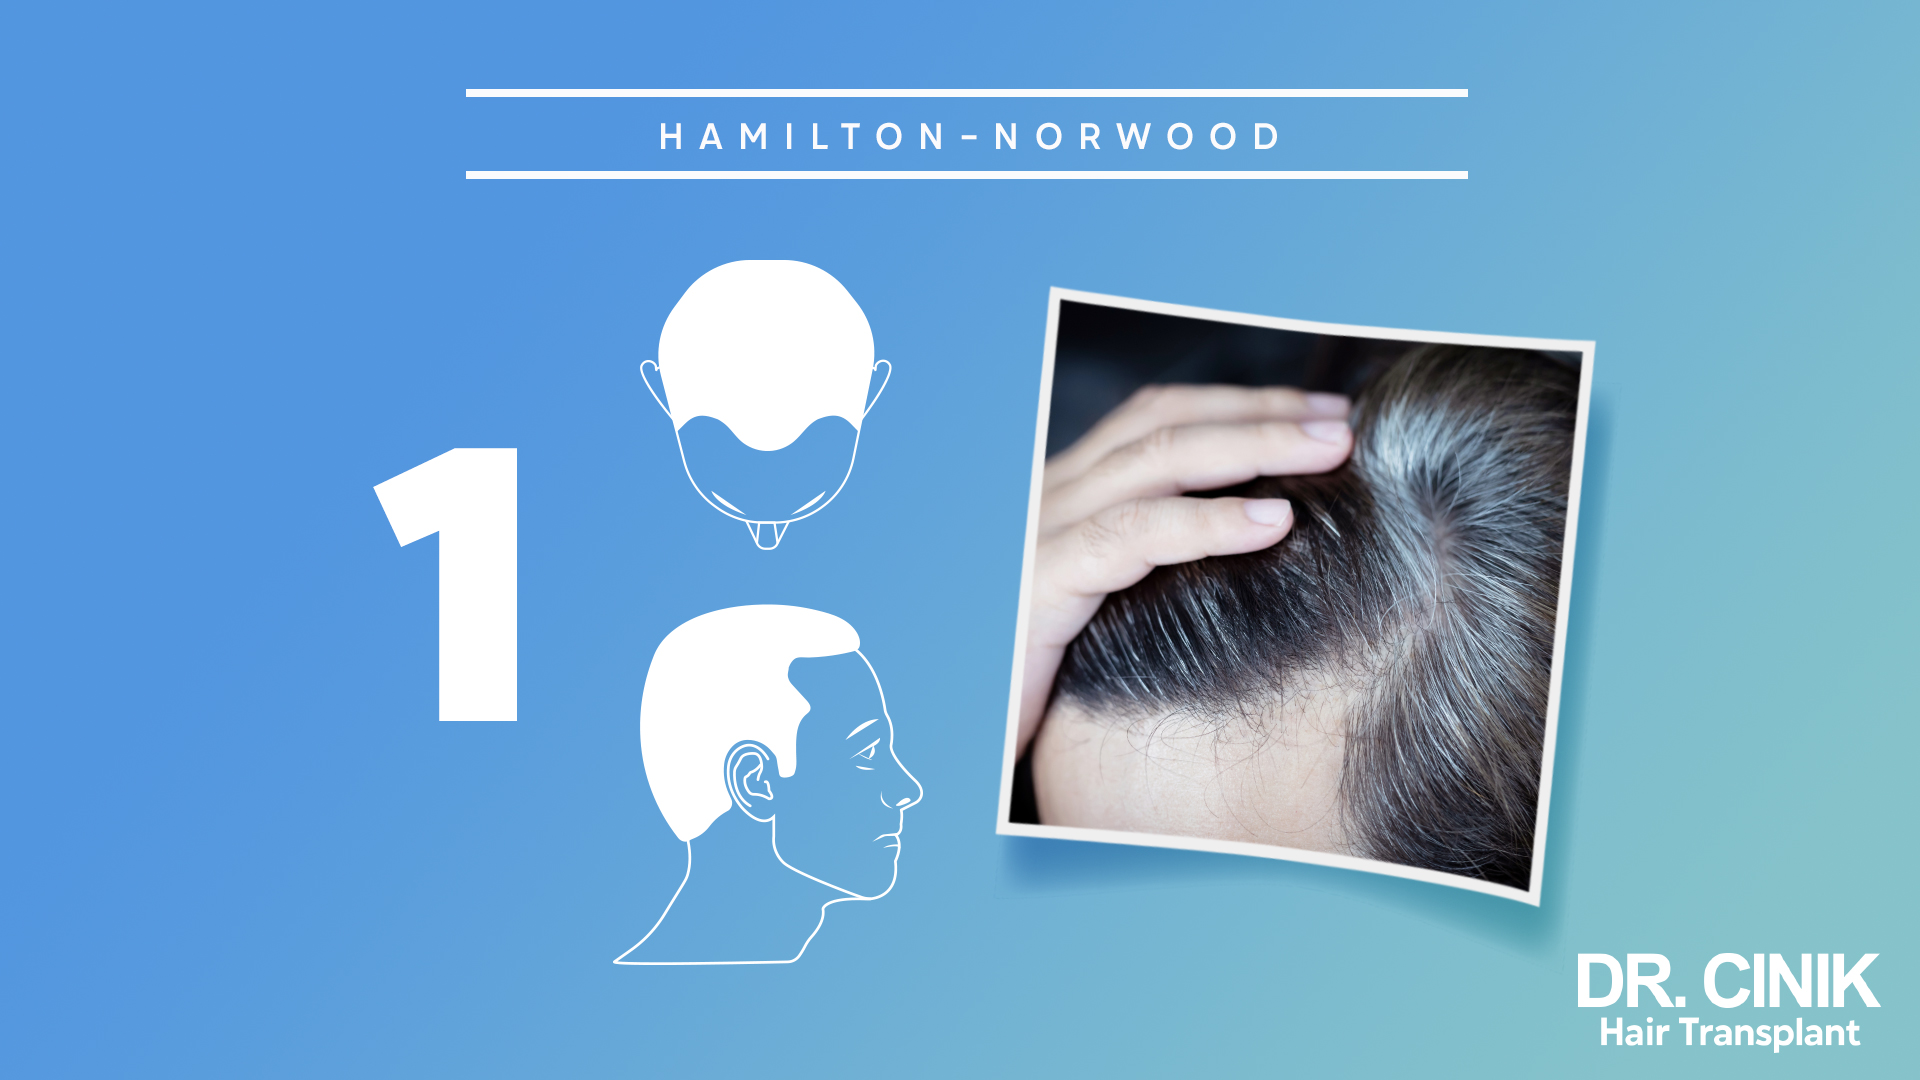 Gráfico que representa la escala "HAMILTON-NORWOOD" relacionada con la pérdida de cabello. El fondo es de color azul claro. Hay un número grande "1" en el lado izquierdo, indicando que se trata de la etapa 1 de la escala. Al centro, hay dos ilustraciones en blanco: la de arriba muestra la parte superior de una cabeza con una línea delgada de cabello faltante en la coronilla, mientras que la de abajo es el perfil de un hombre con cabello completo. A la derecha, hay una imagen real de la parte superior de la cabeza de una persona, mostrando una pequeña cantidad de pérdida de cabello en la coronilla mientras una mano está tocando el cabello. En la esquina inferior derecha, está el logo "DR. CINIK Hair Transplant".